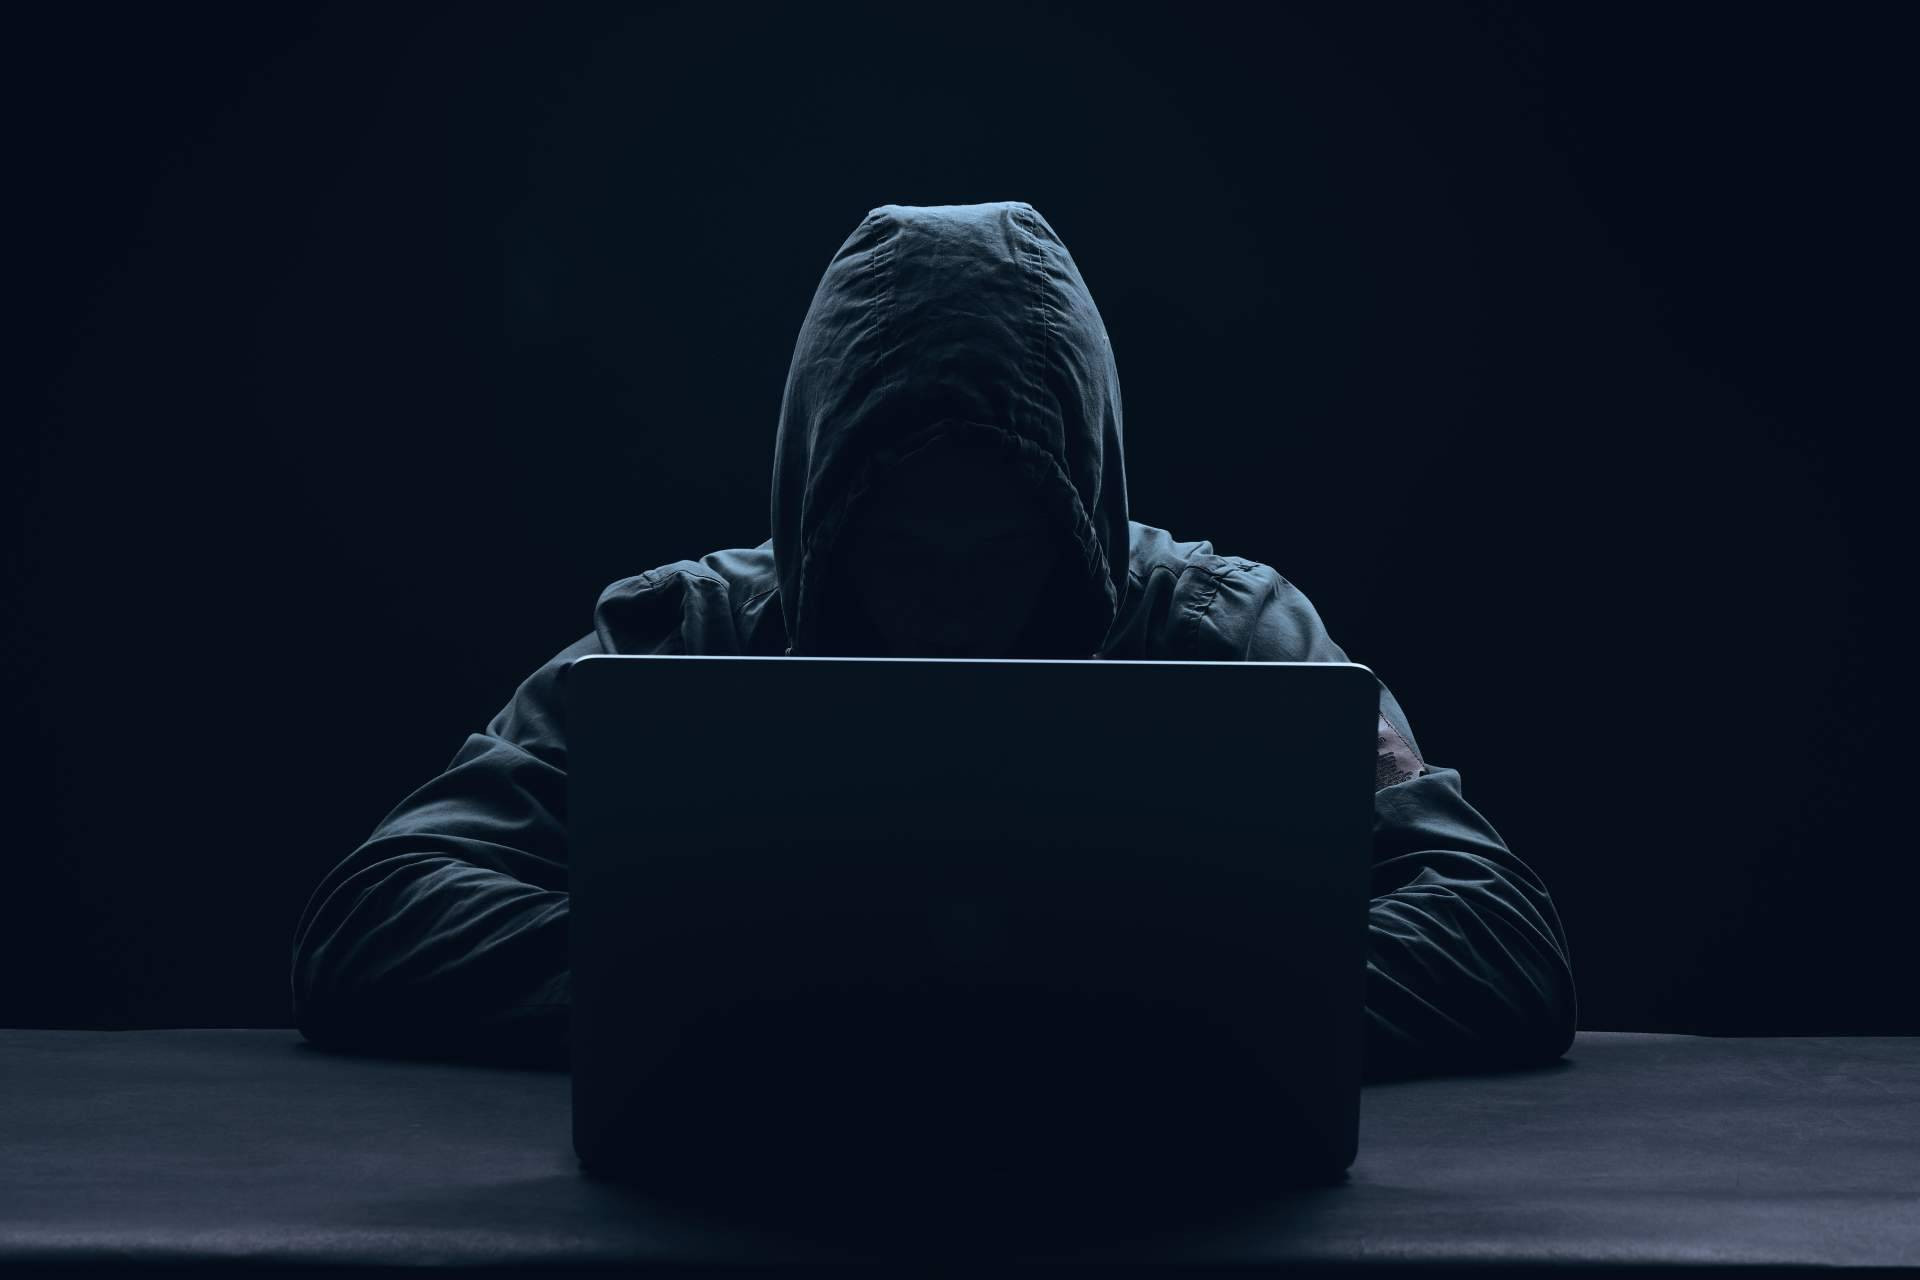  Los servicios de seguridad ofensiva de Auditech sirven para detectar vulnerabilidades y prevenir ciberataques 